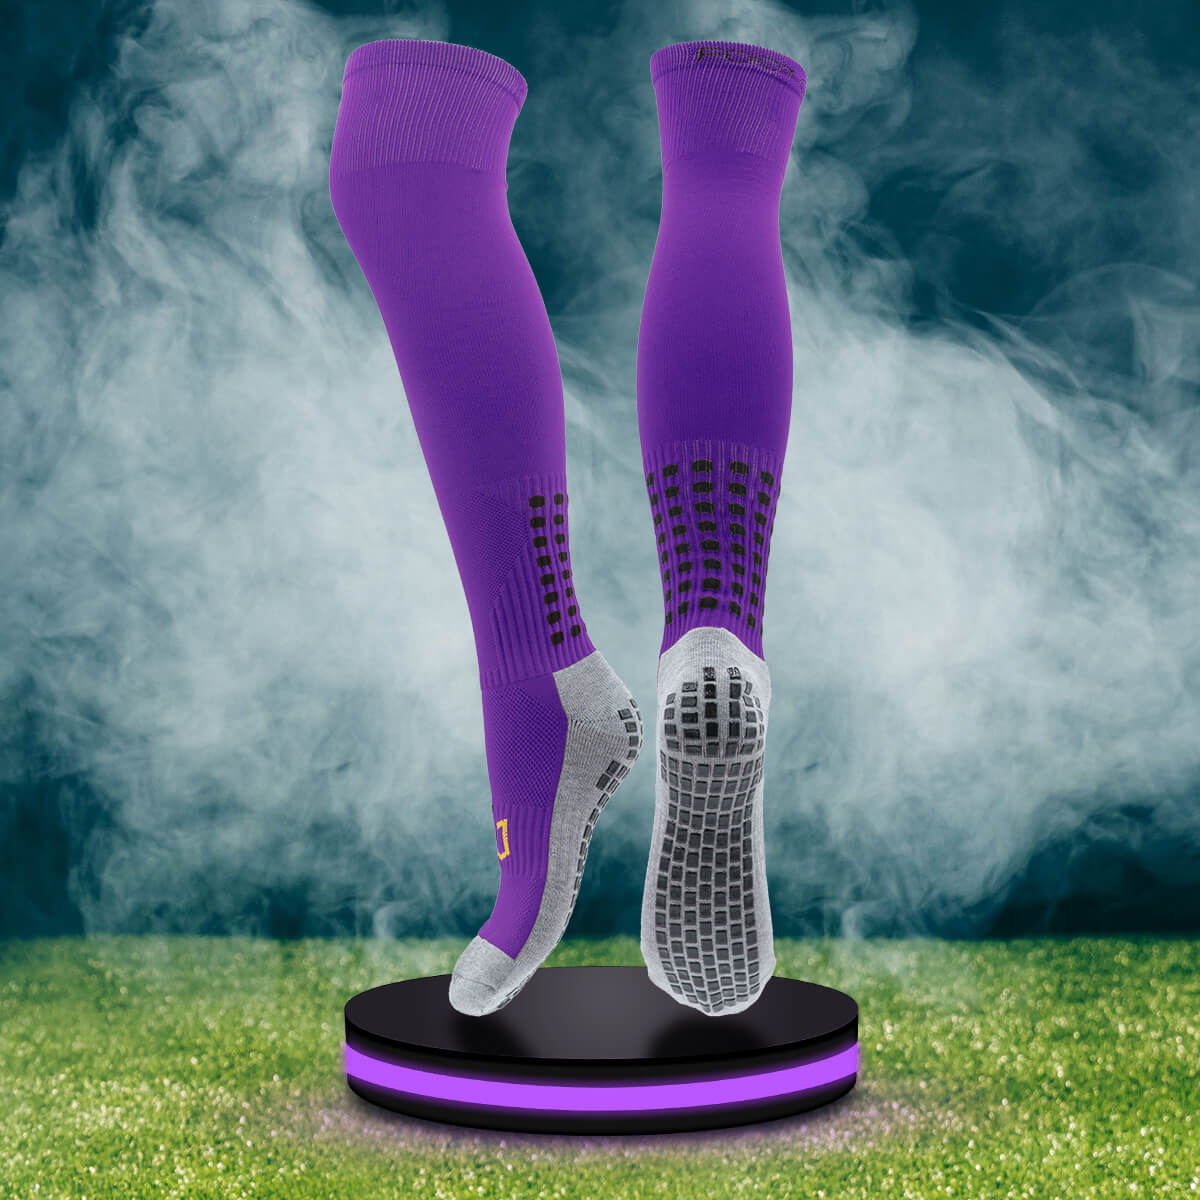 Full Length Grip Socks – Foot Grips